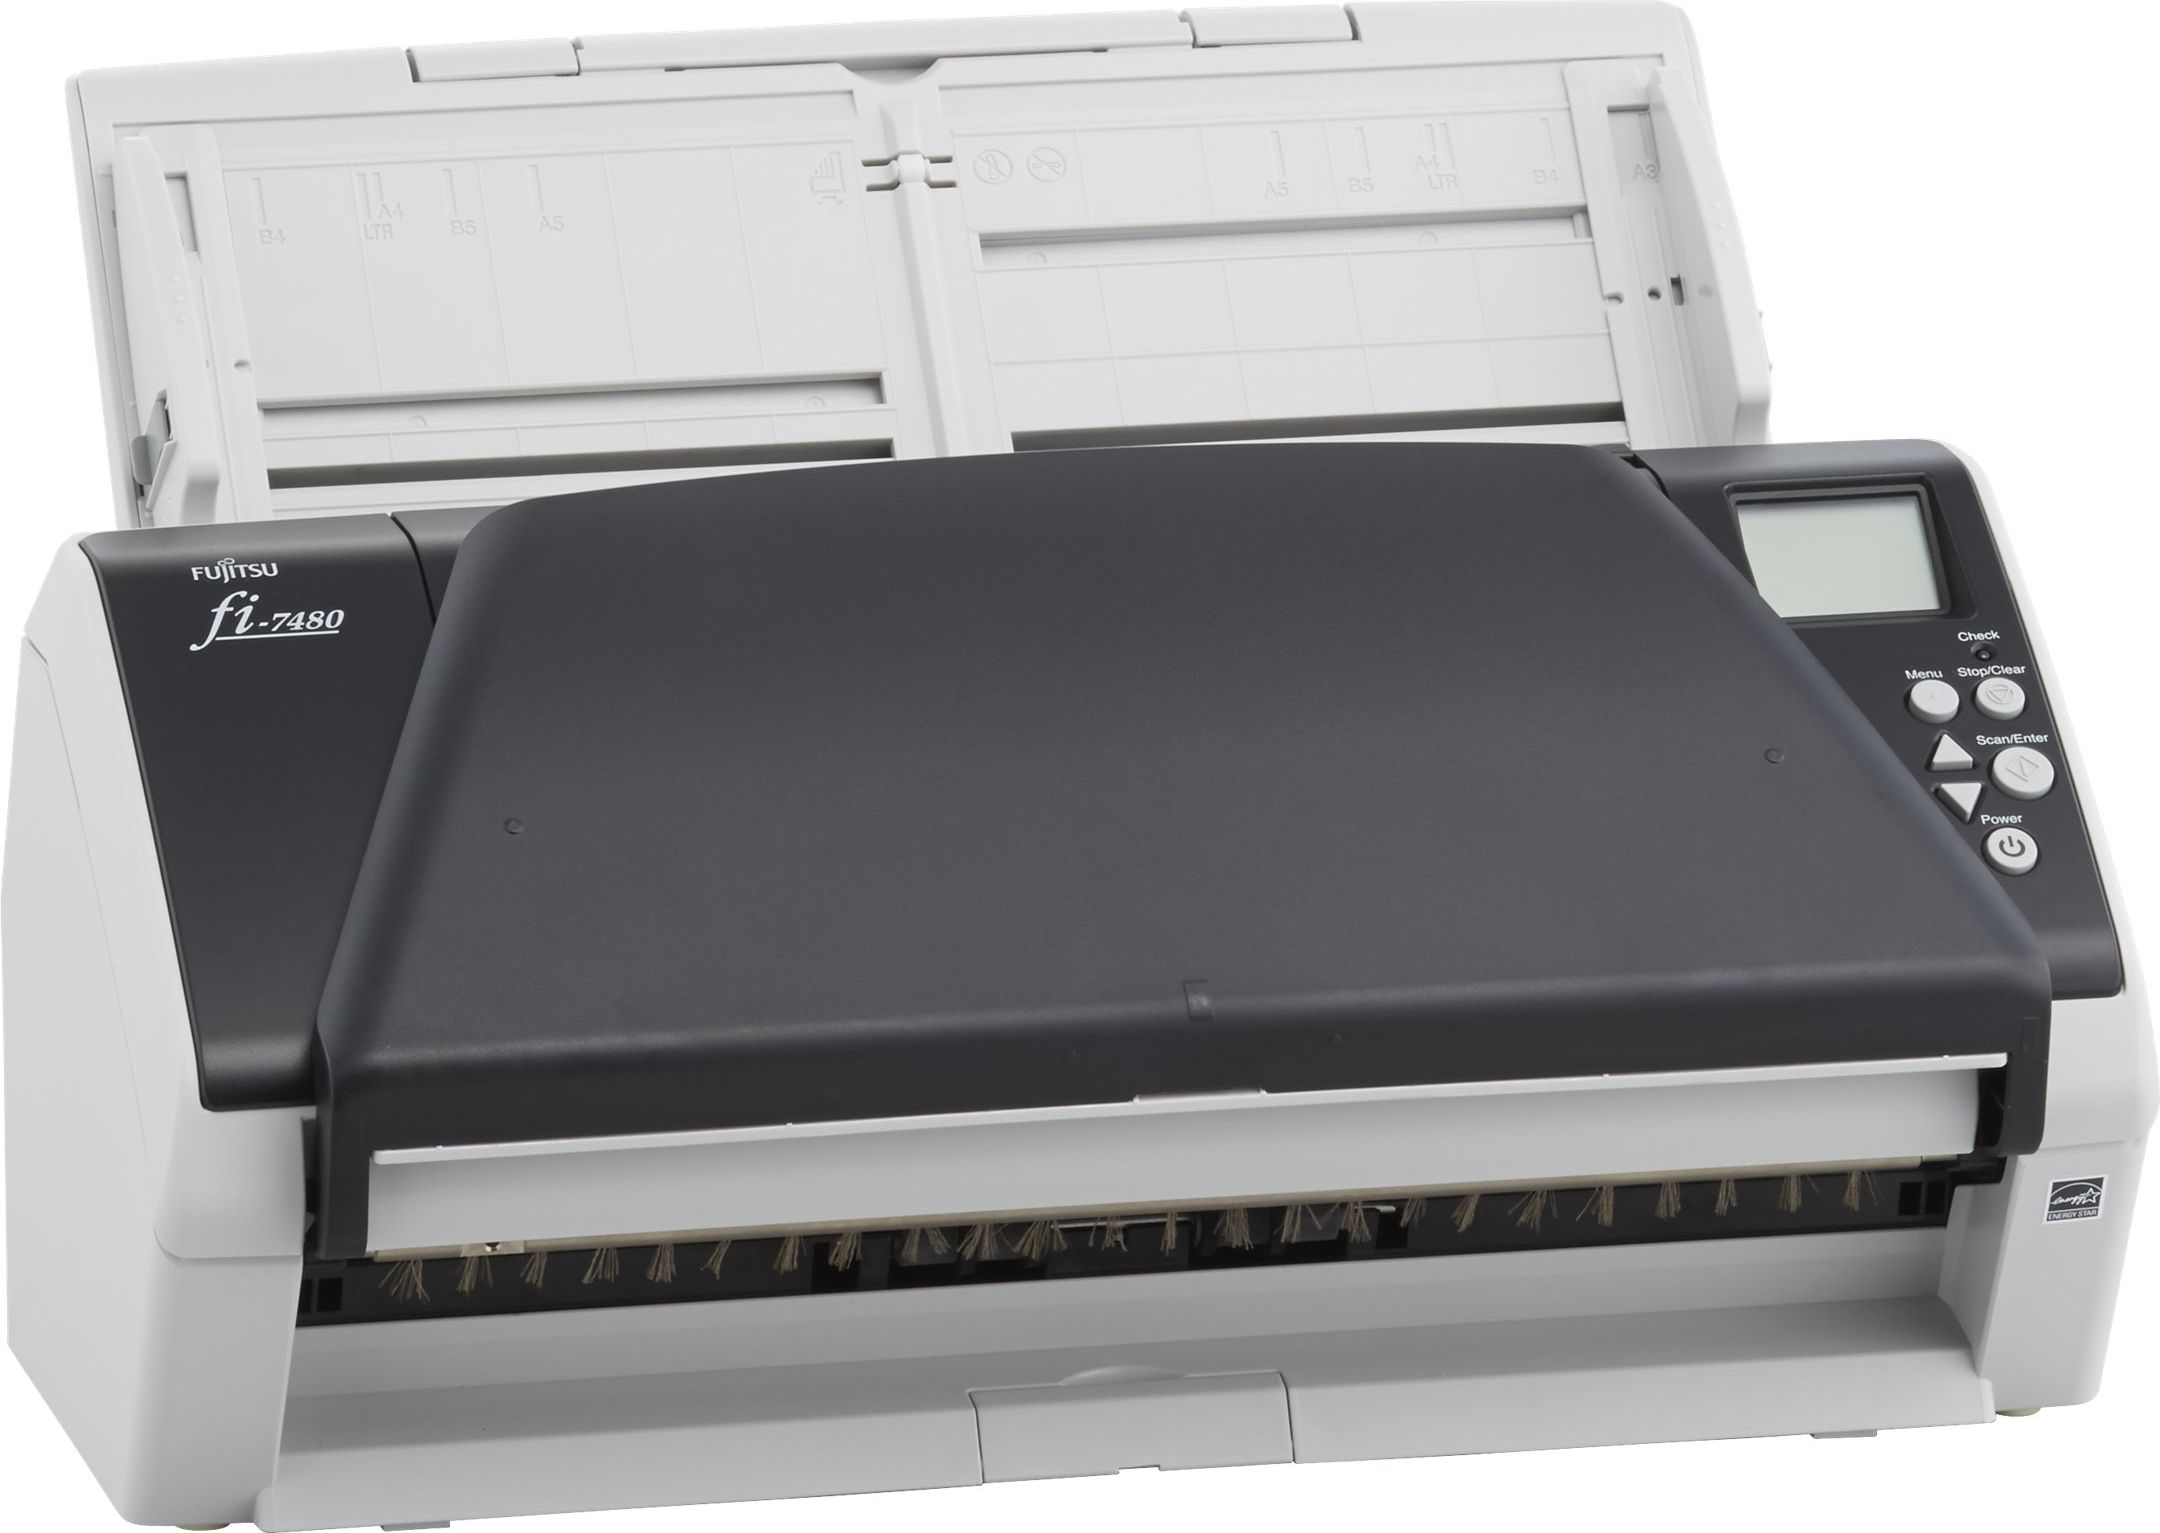 Fujitsu Fi-7480 Scanners